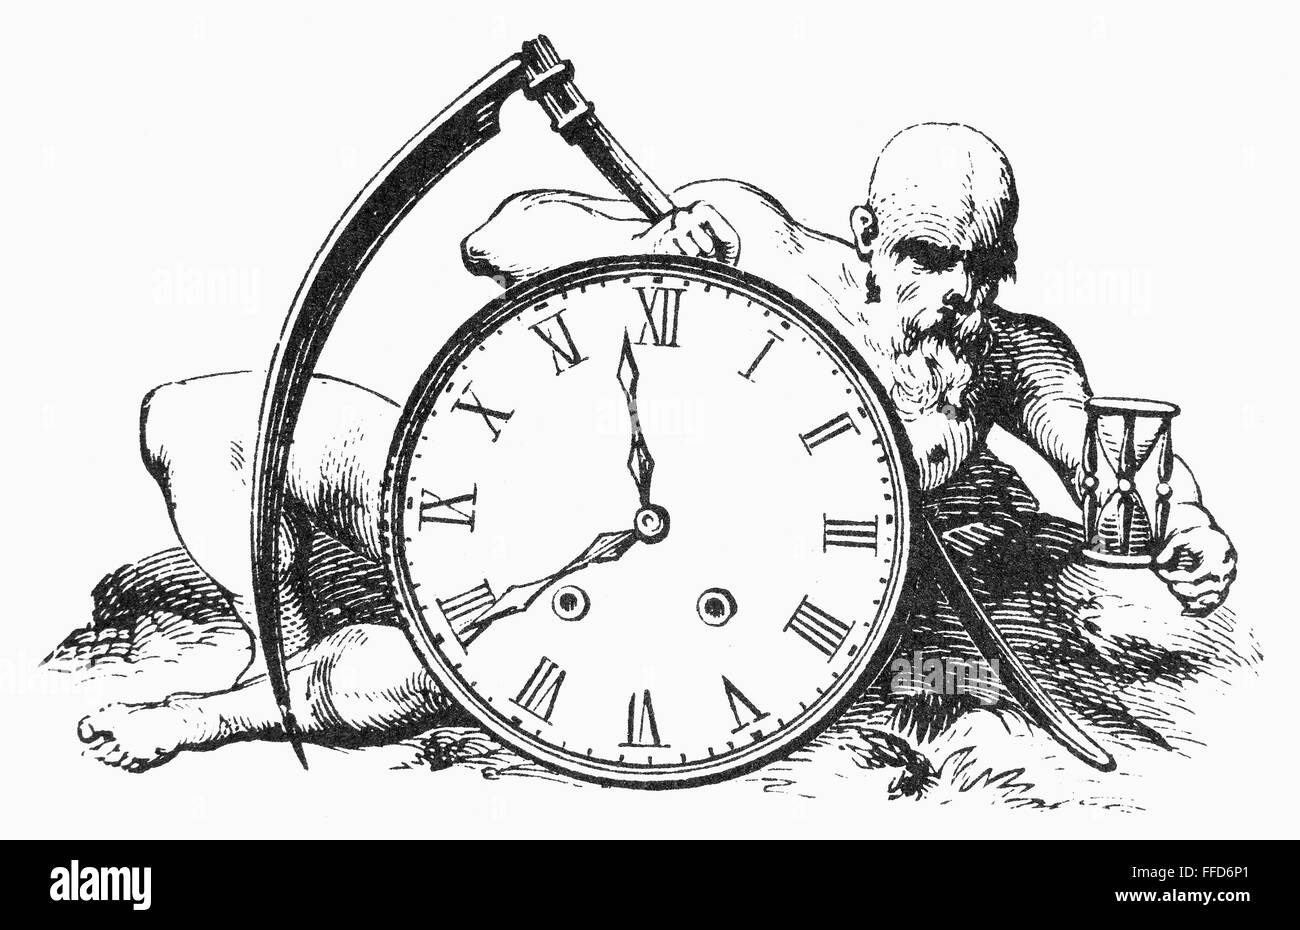 Часы на времени нарисовать. Человек с часами. Время иллюстрация. Иллюстрация часов. Иллюстрации с часами.